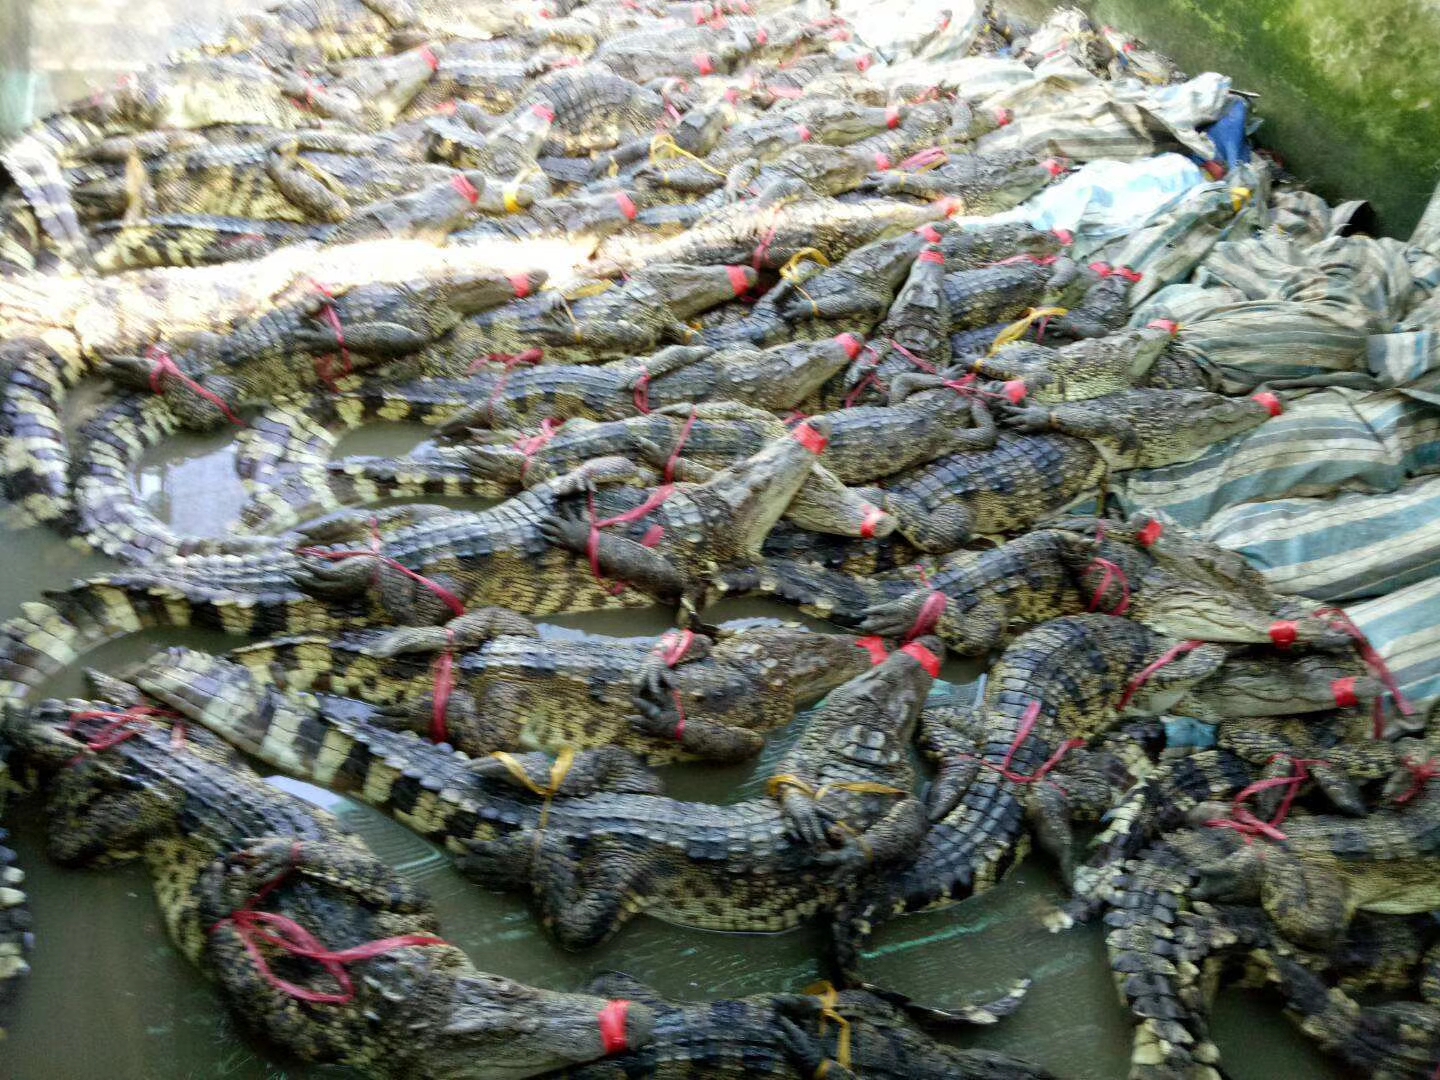 印度鳄鱼养殖场图片